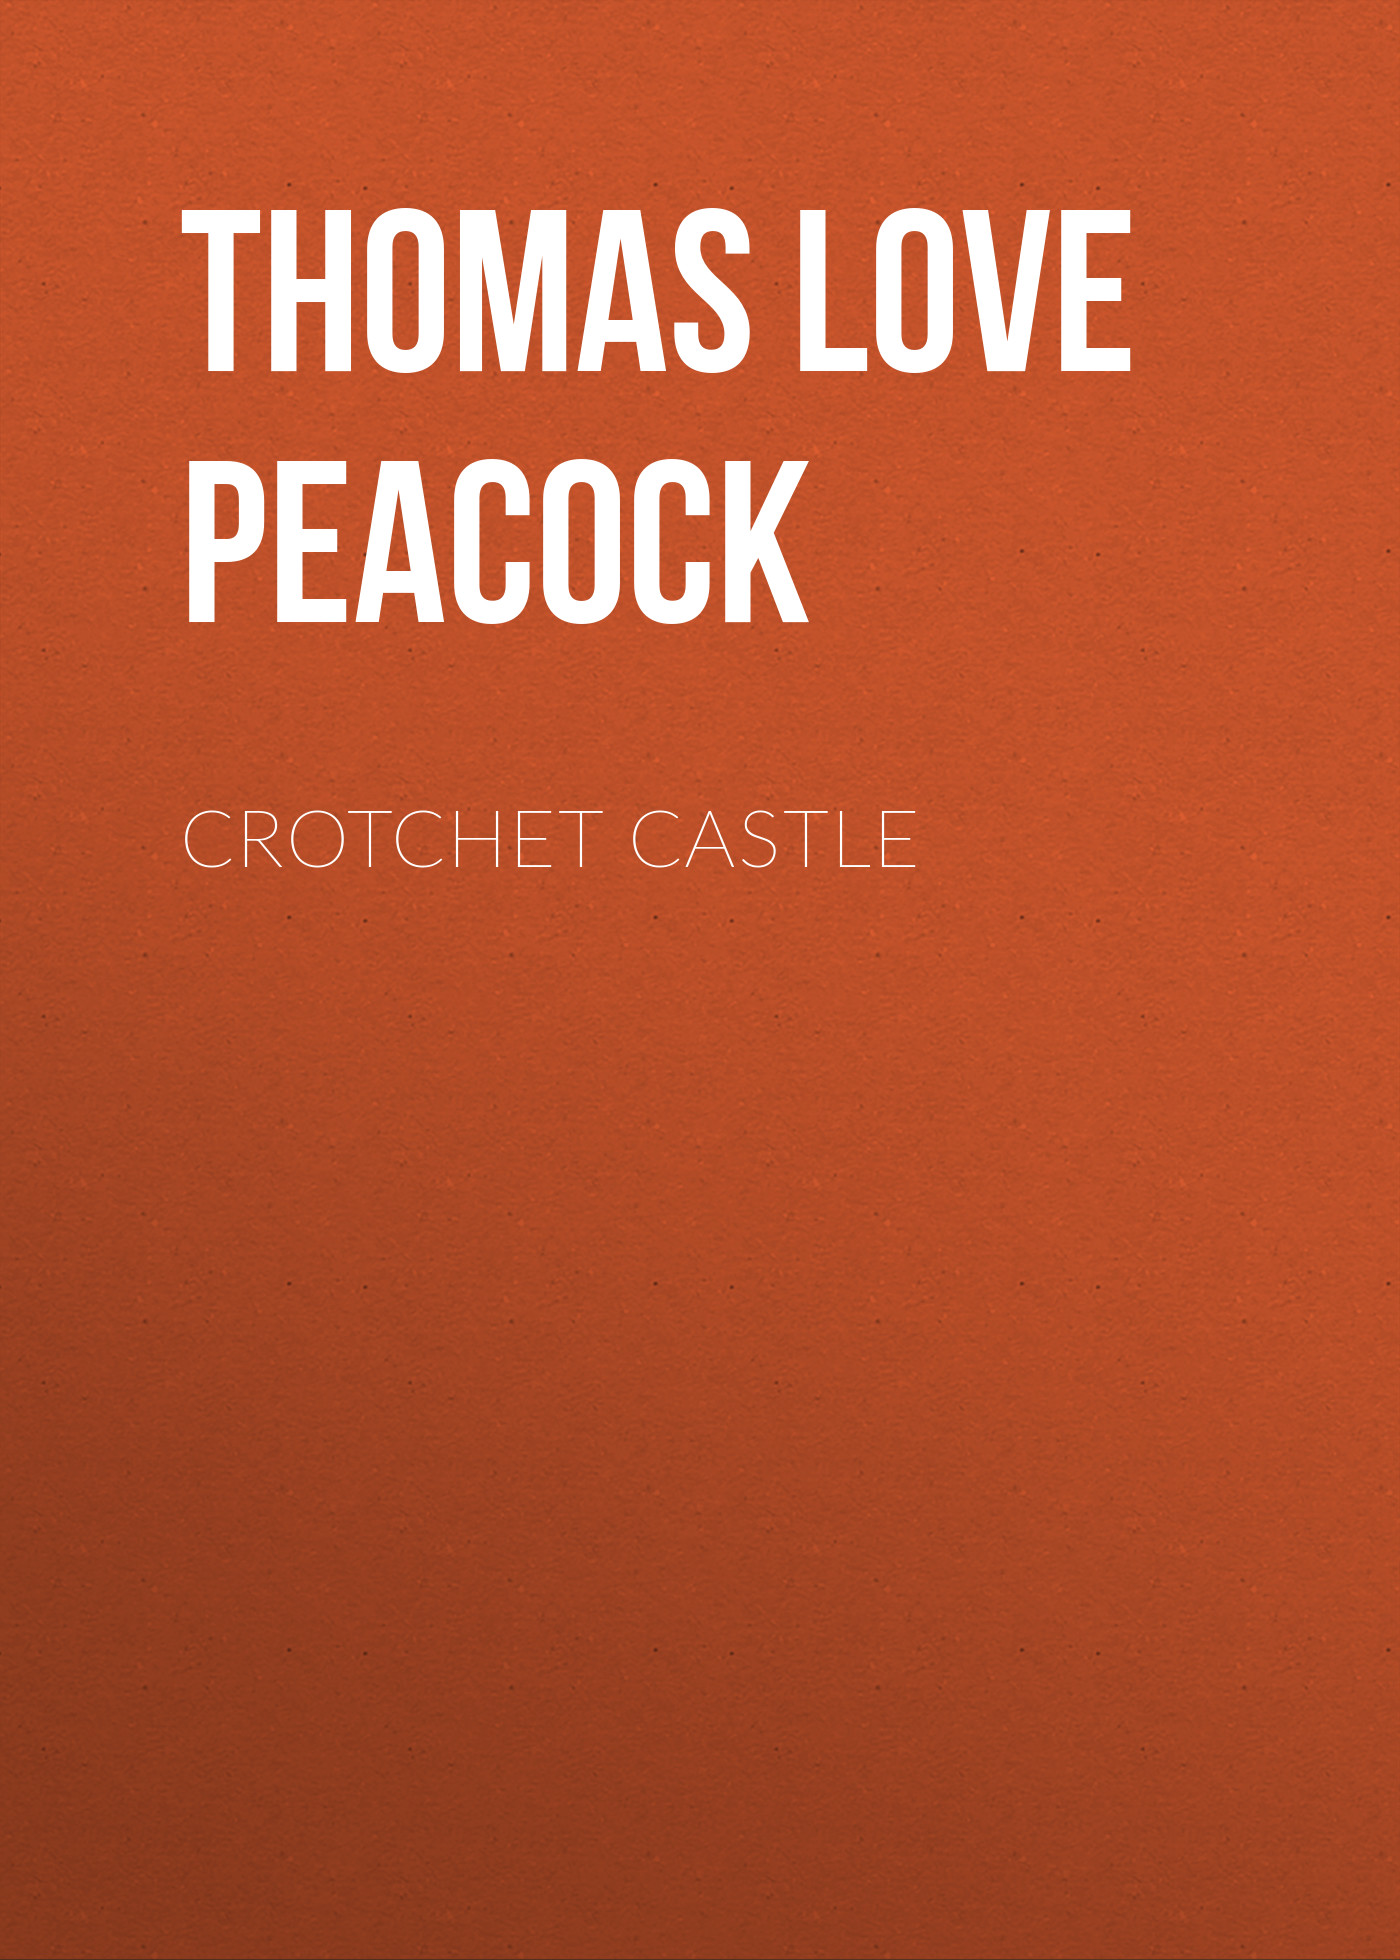 Книга Crotchet Castle из серии , созданная Thomas Love Peacock, может относится к жанру Зарубежная старинная литература, Философия. Стоимость книги Crotchet Castle  с идентификатором 36365390 составляет 0 руб.